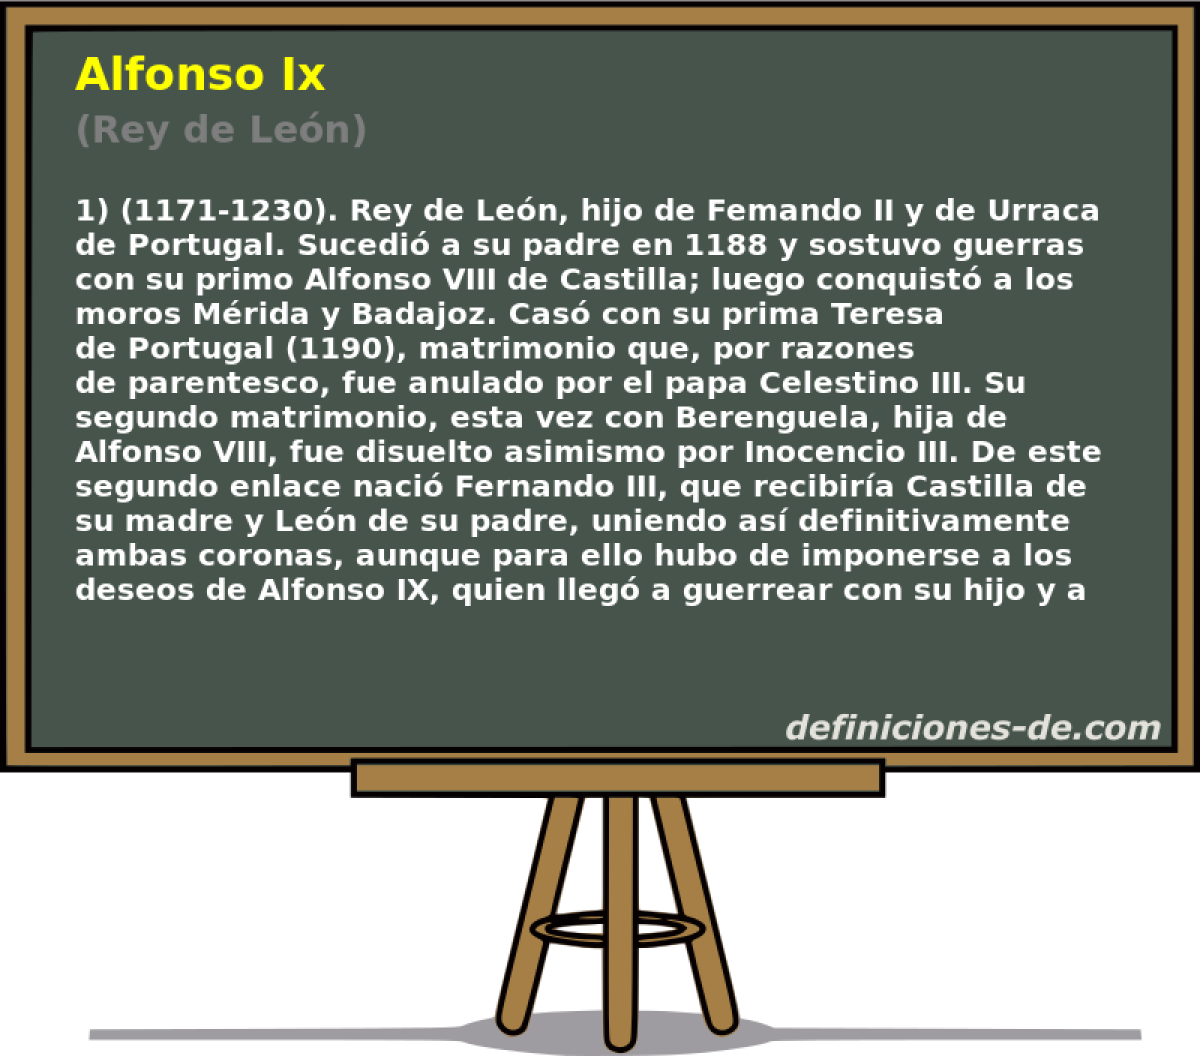 Alfonso Ix (Rey de Len)